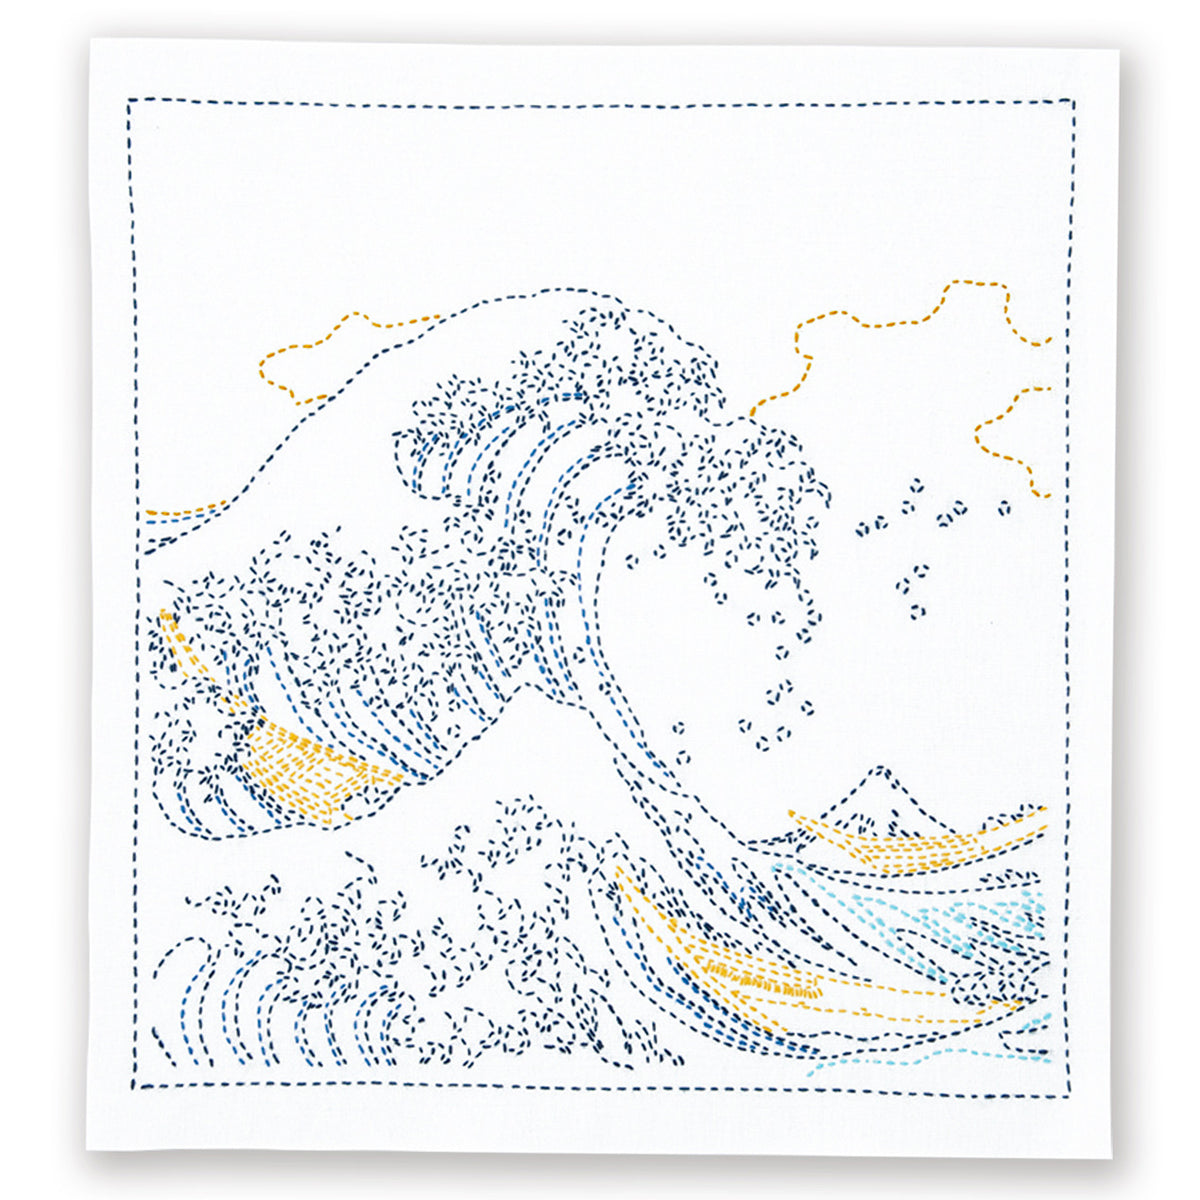 Views of Mt. Fuji Sashiko Embroidery Kit - Great Wave